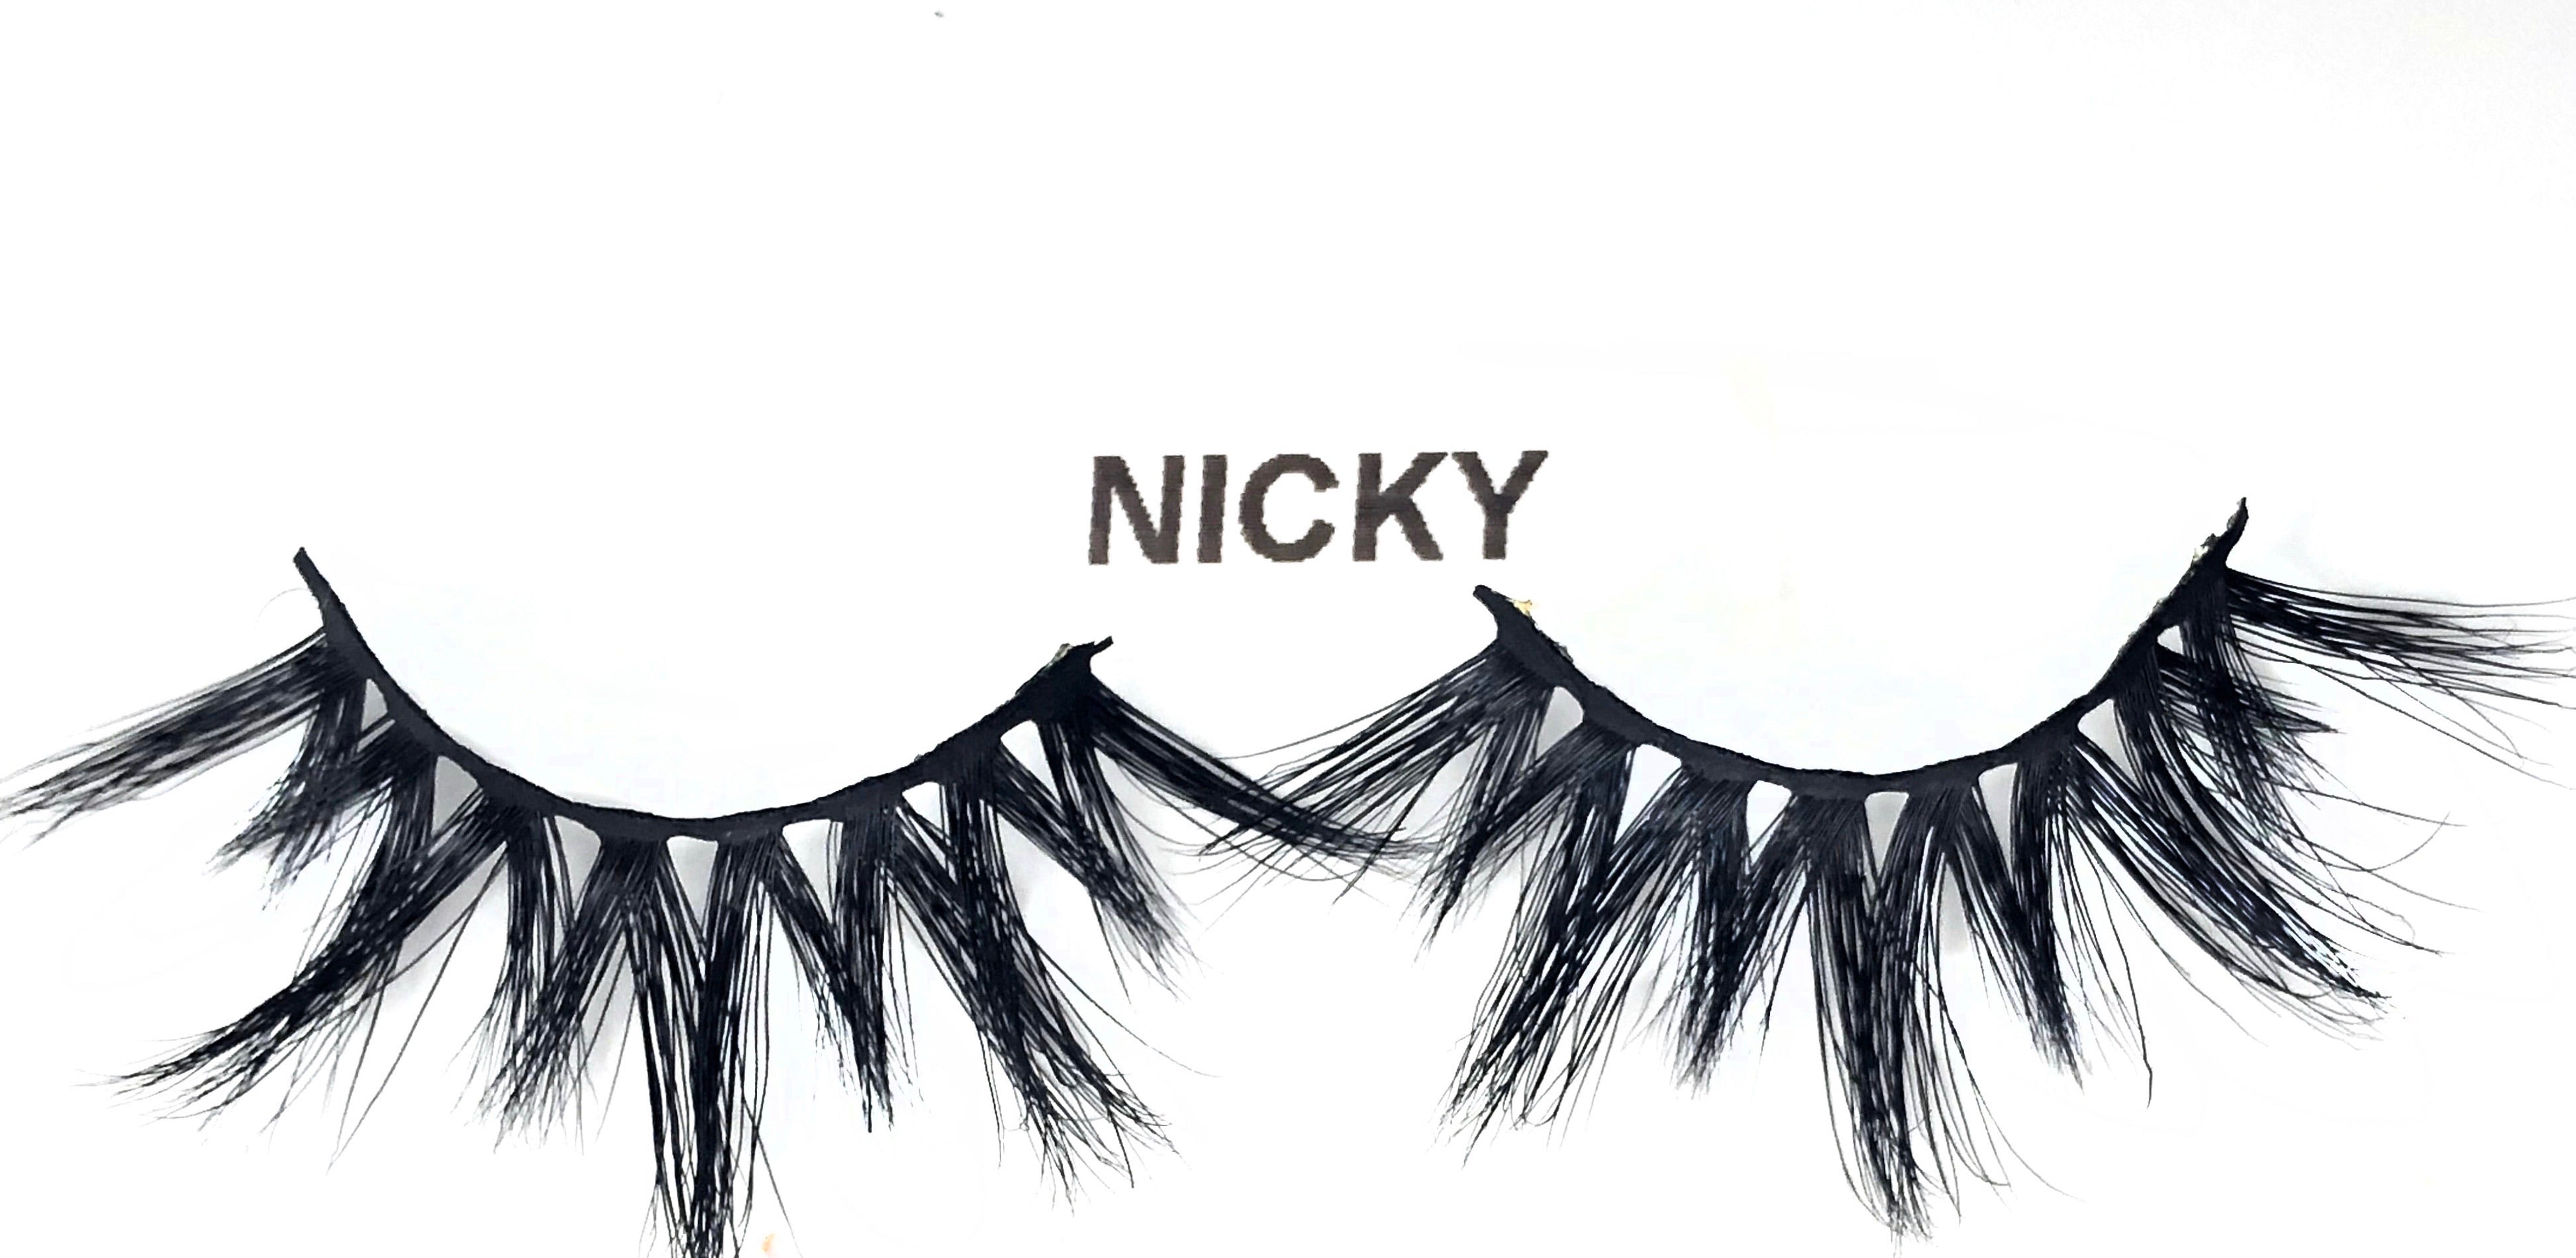 NICKY